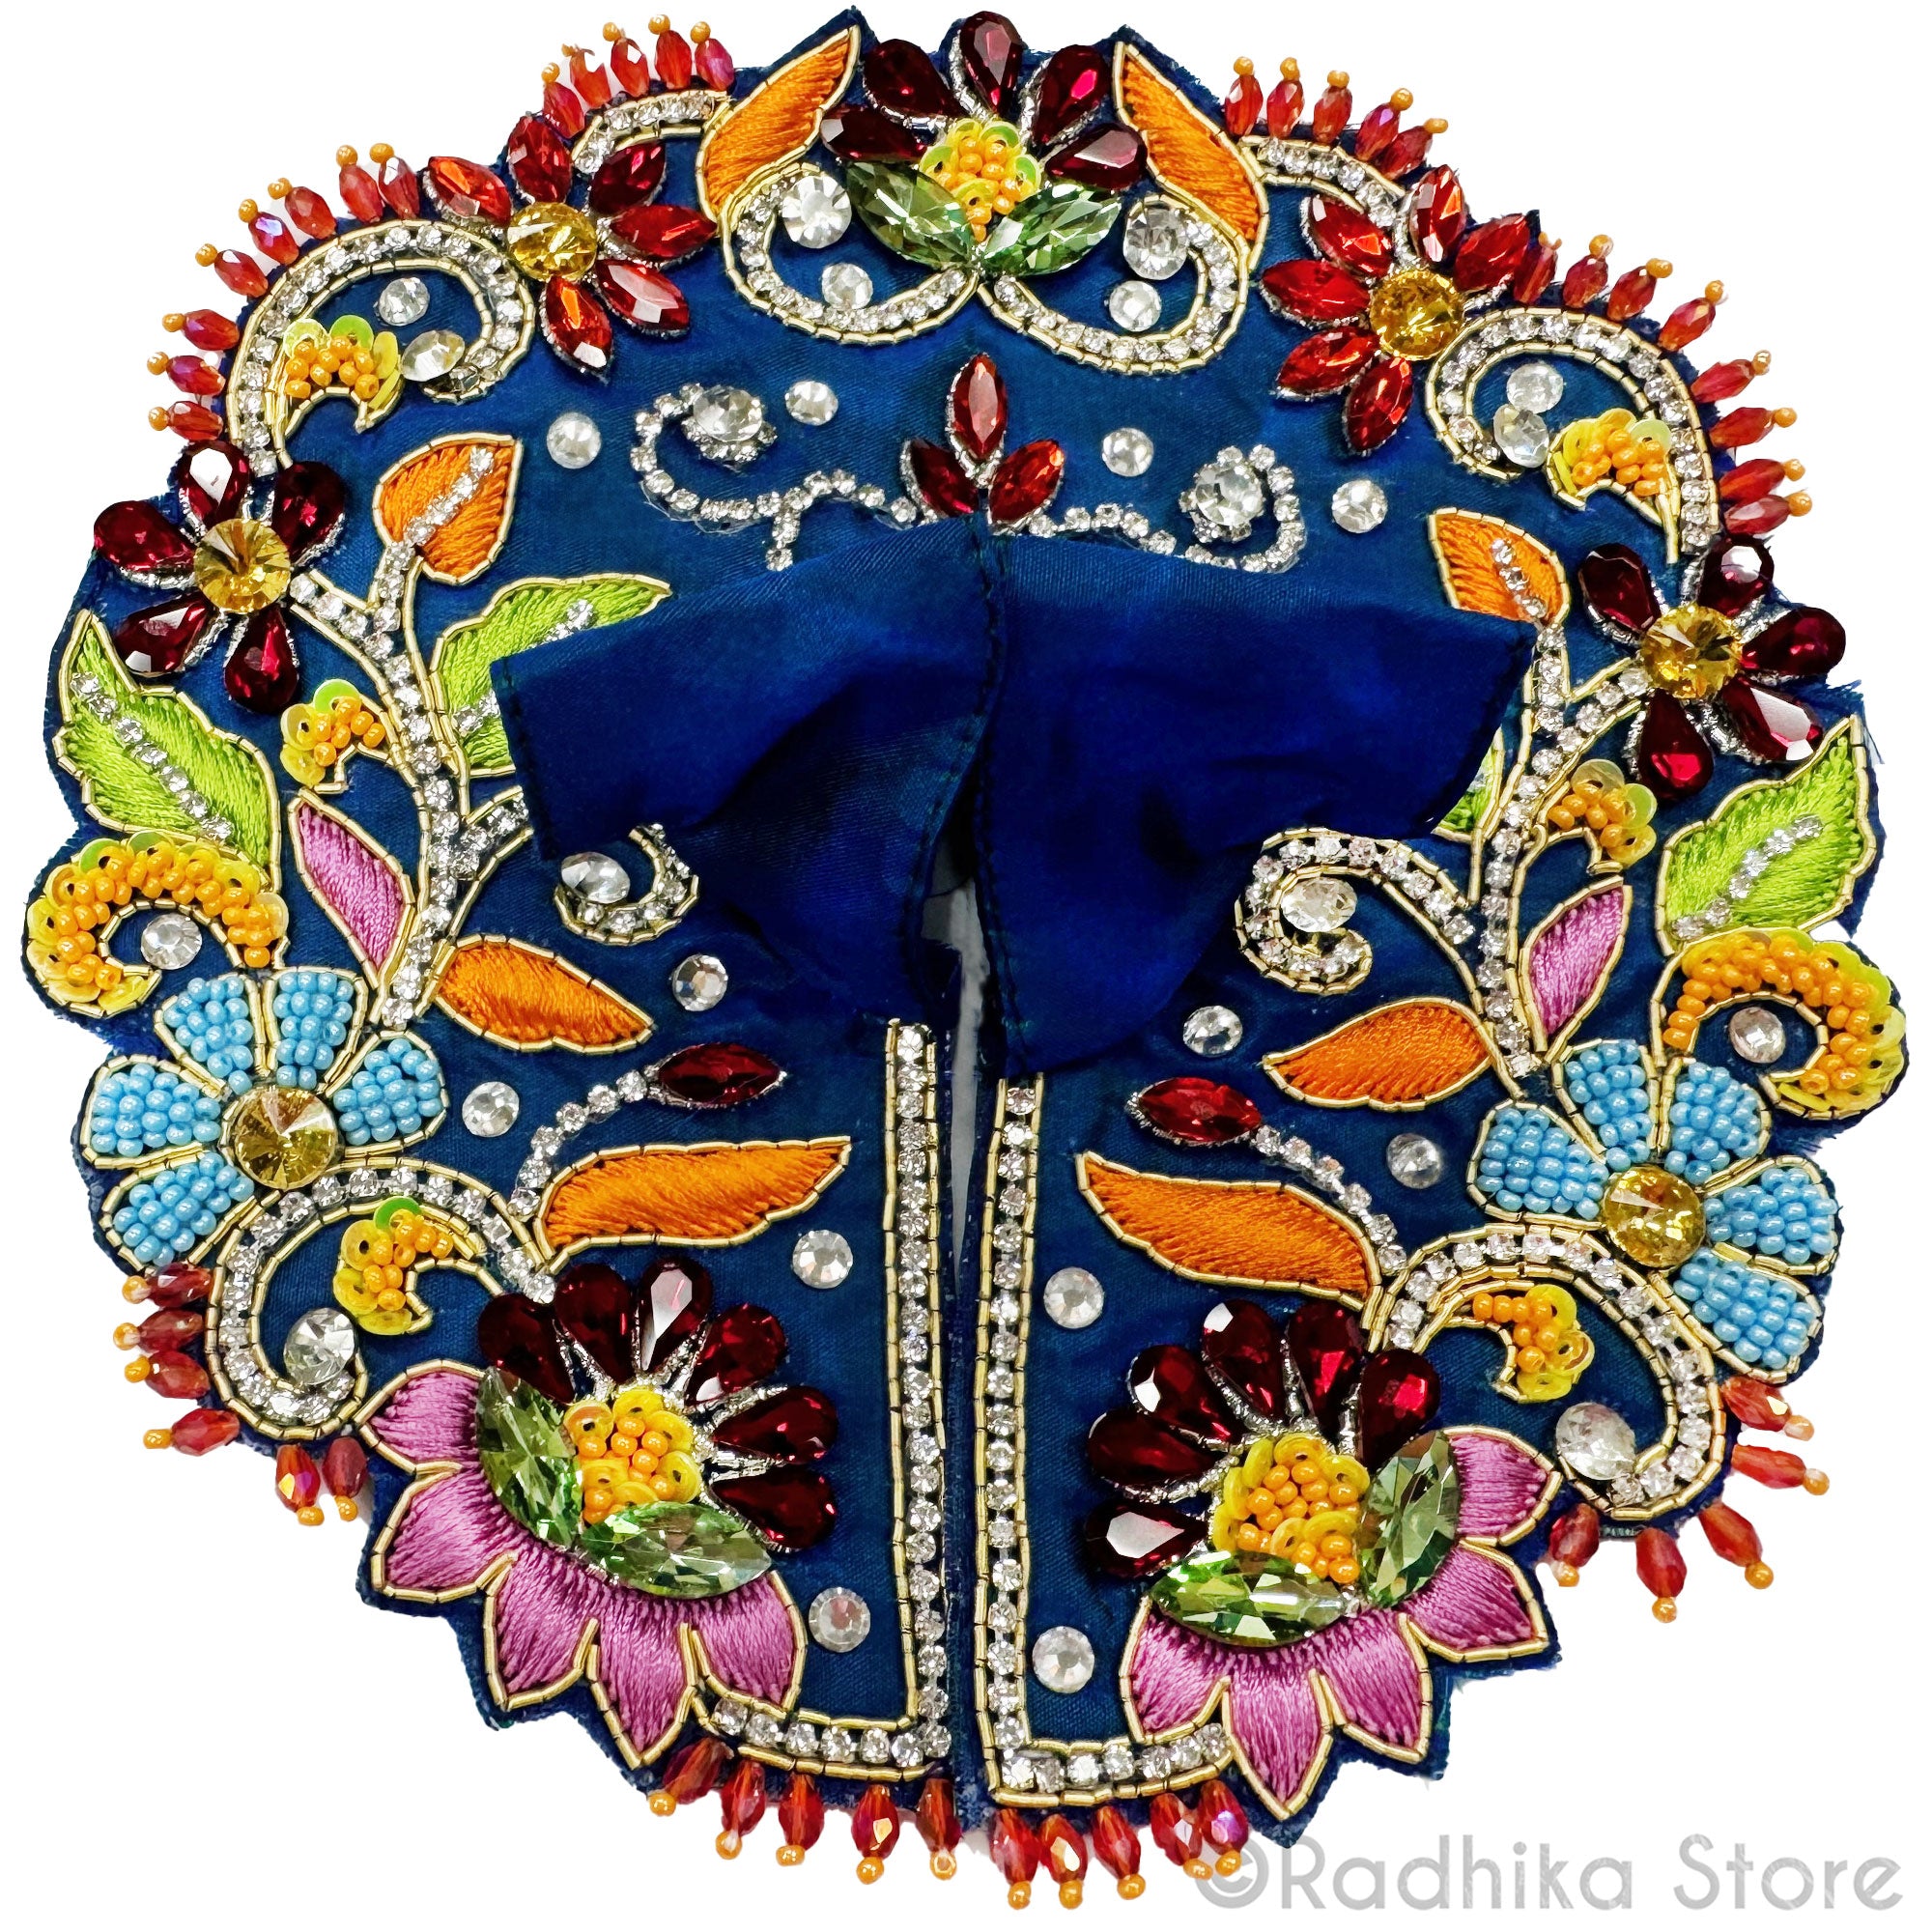 Surabhi Kund Lotus - Dark Blue - Laddu Gopal Outfit